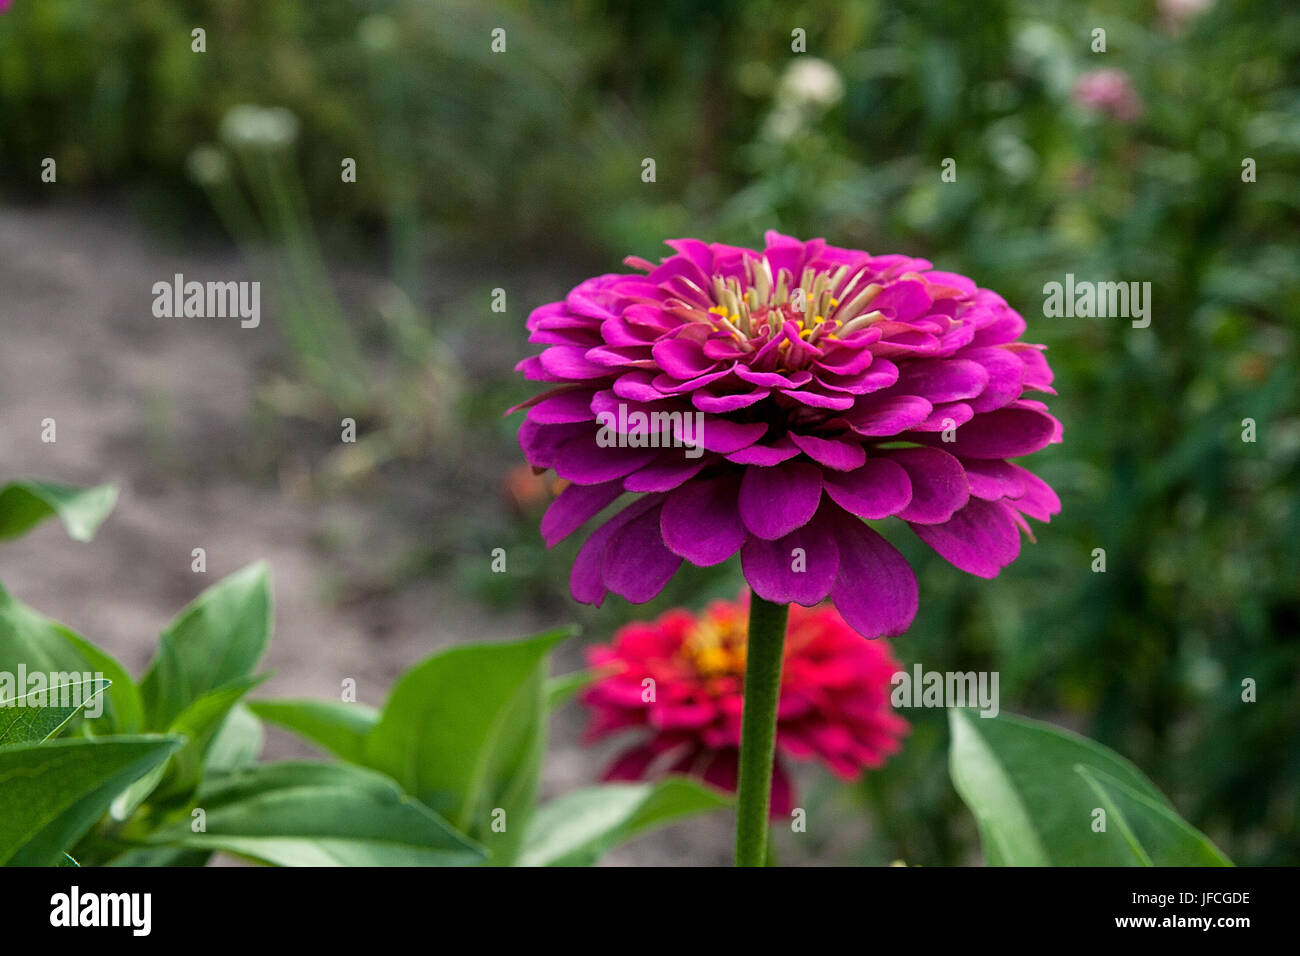 Schöne Zinnie Blumen auf grünem Blatt Hintergrund. Nahaufnahme der Zinnie Blumen im Sommergarten. Stockfoto